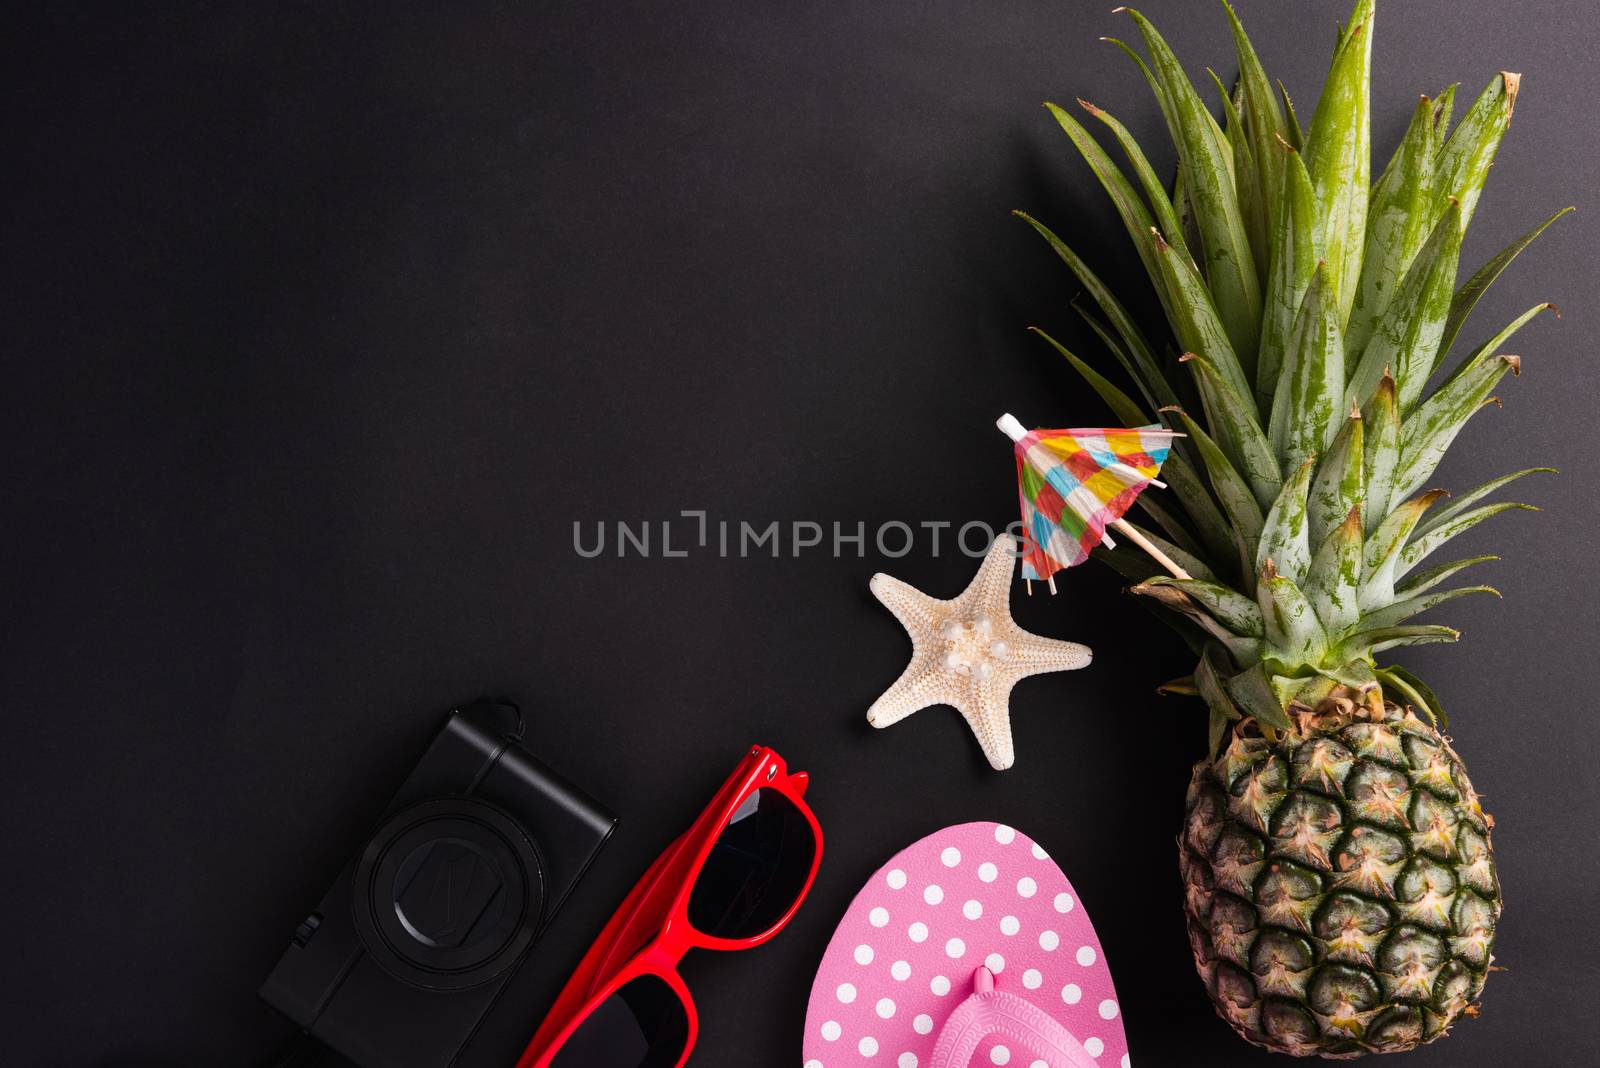 pineapple, sunglasses, starfish, slipper and camera by Sorapop